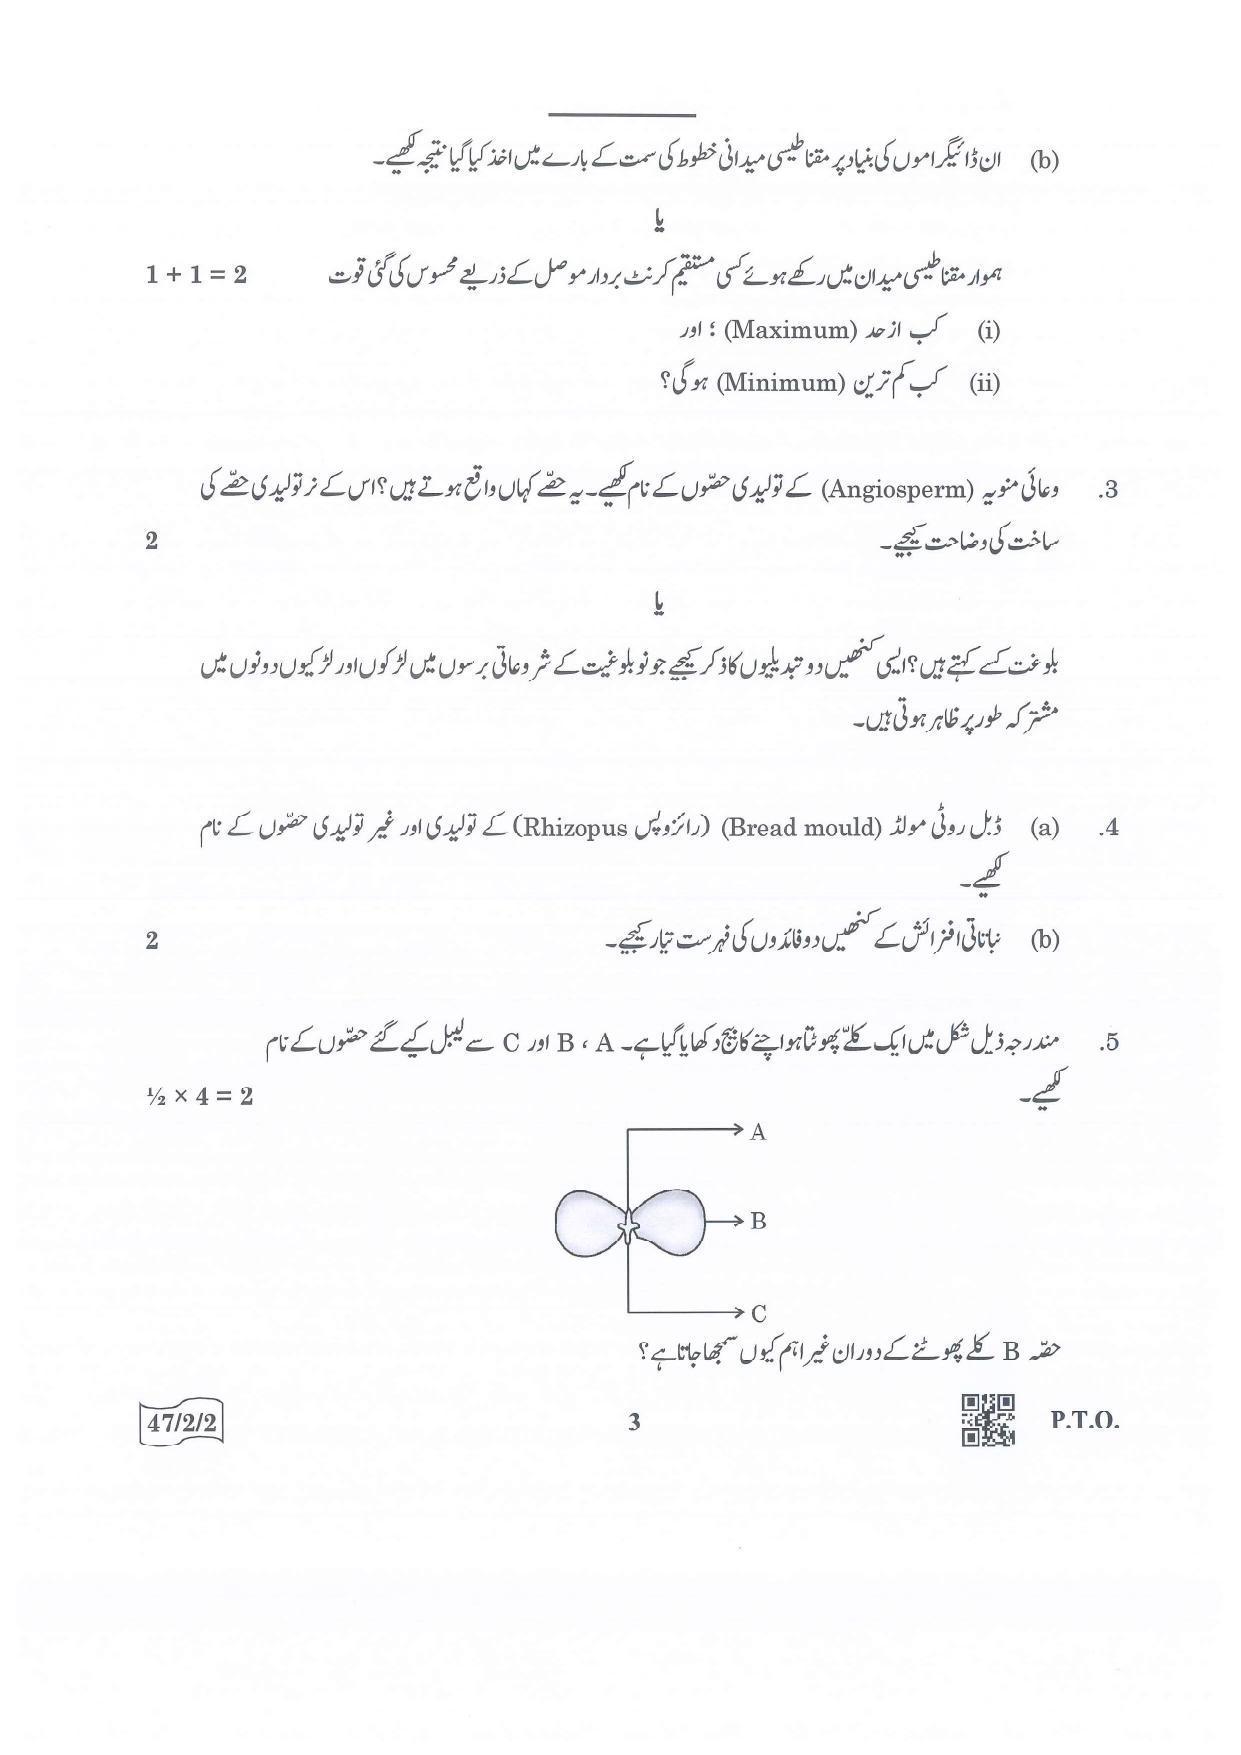 CBSE Class 10 47-2-2 Science Urdu Version.pdf 1 2022 Question Paper - Page 3